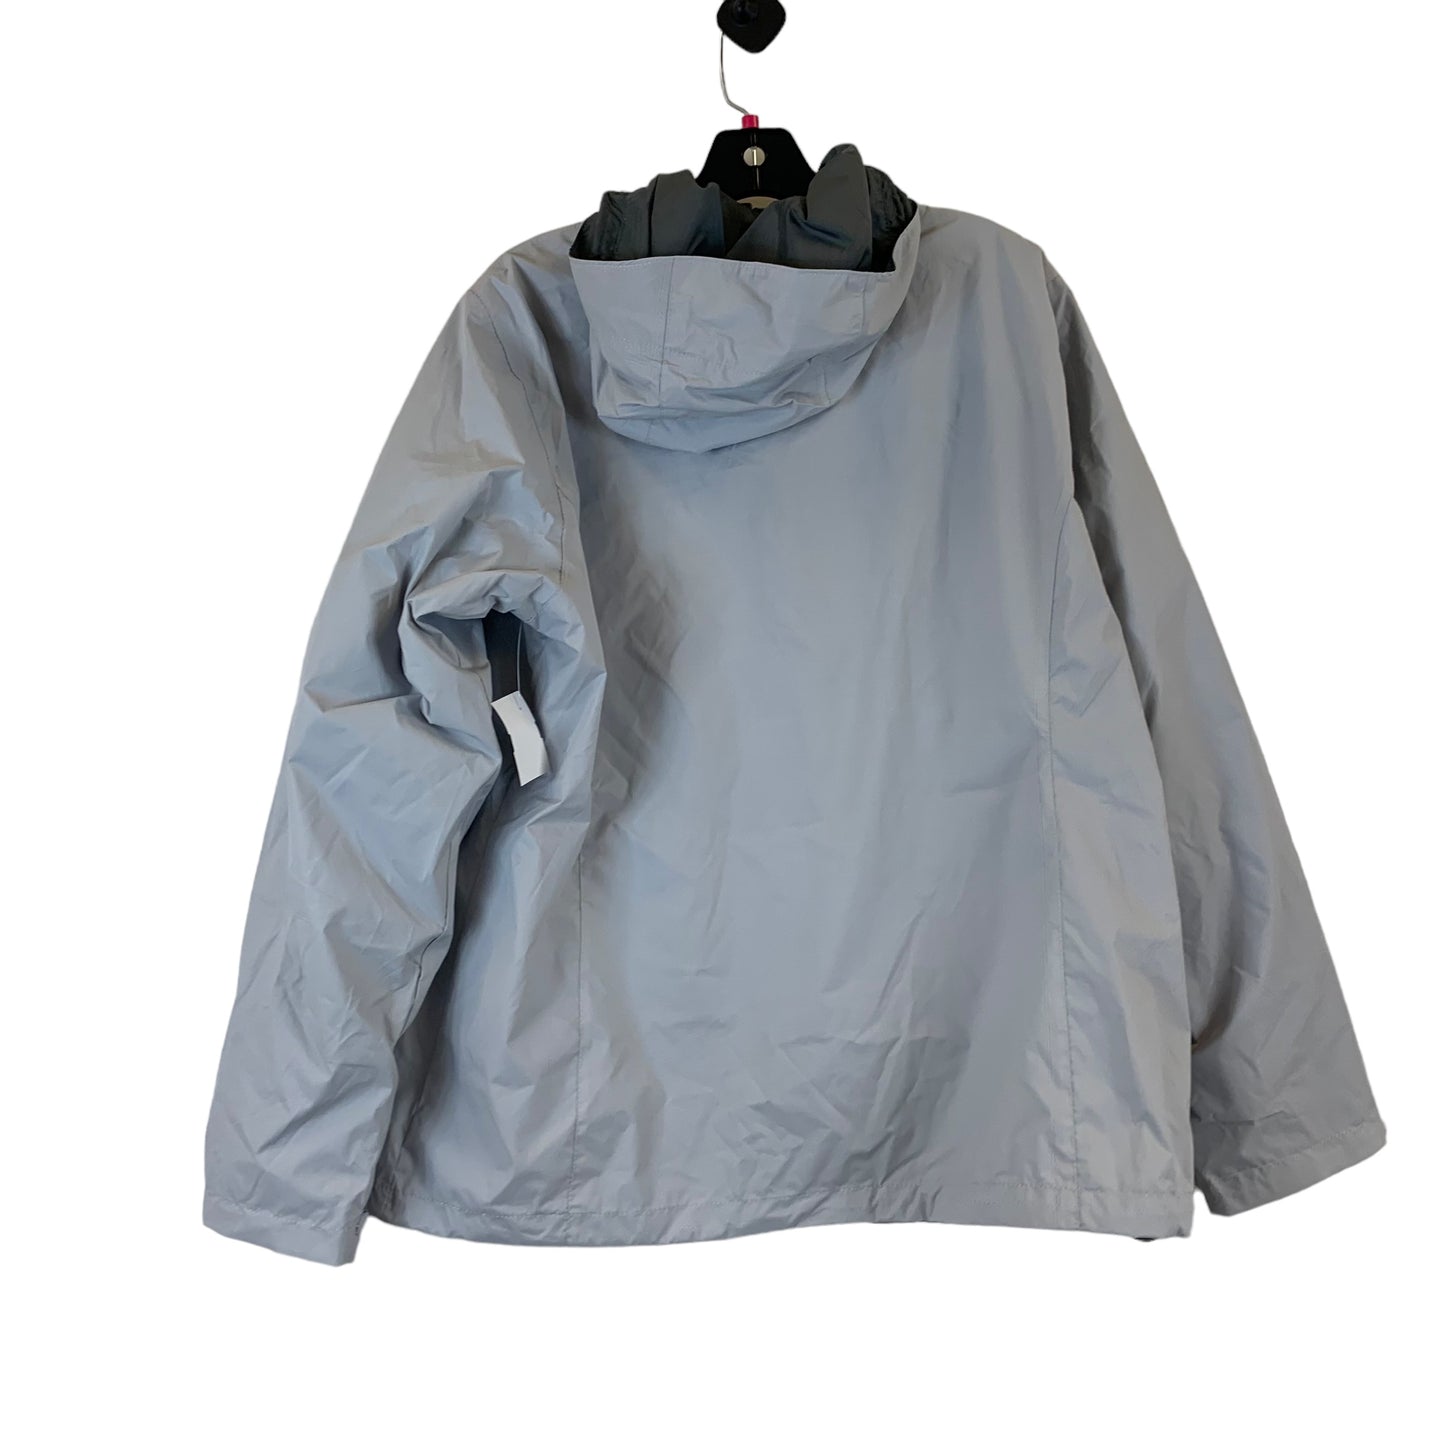 Jacket Windbreaker By Columbia  Size: Xl